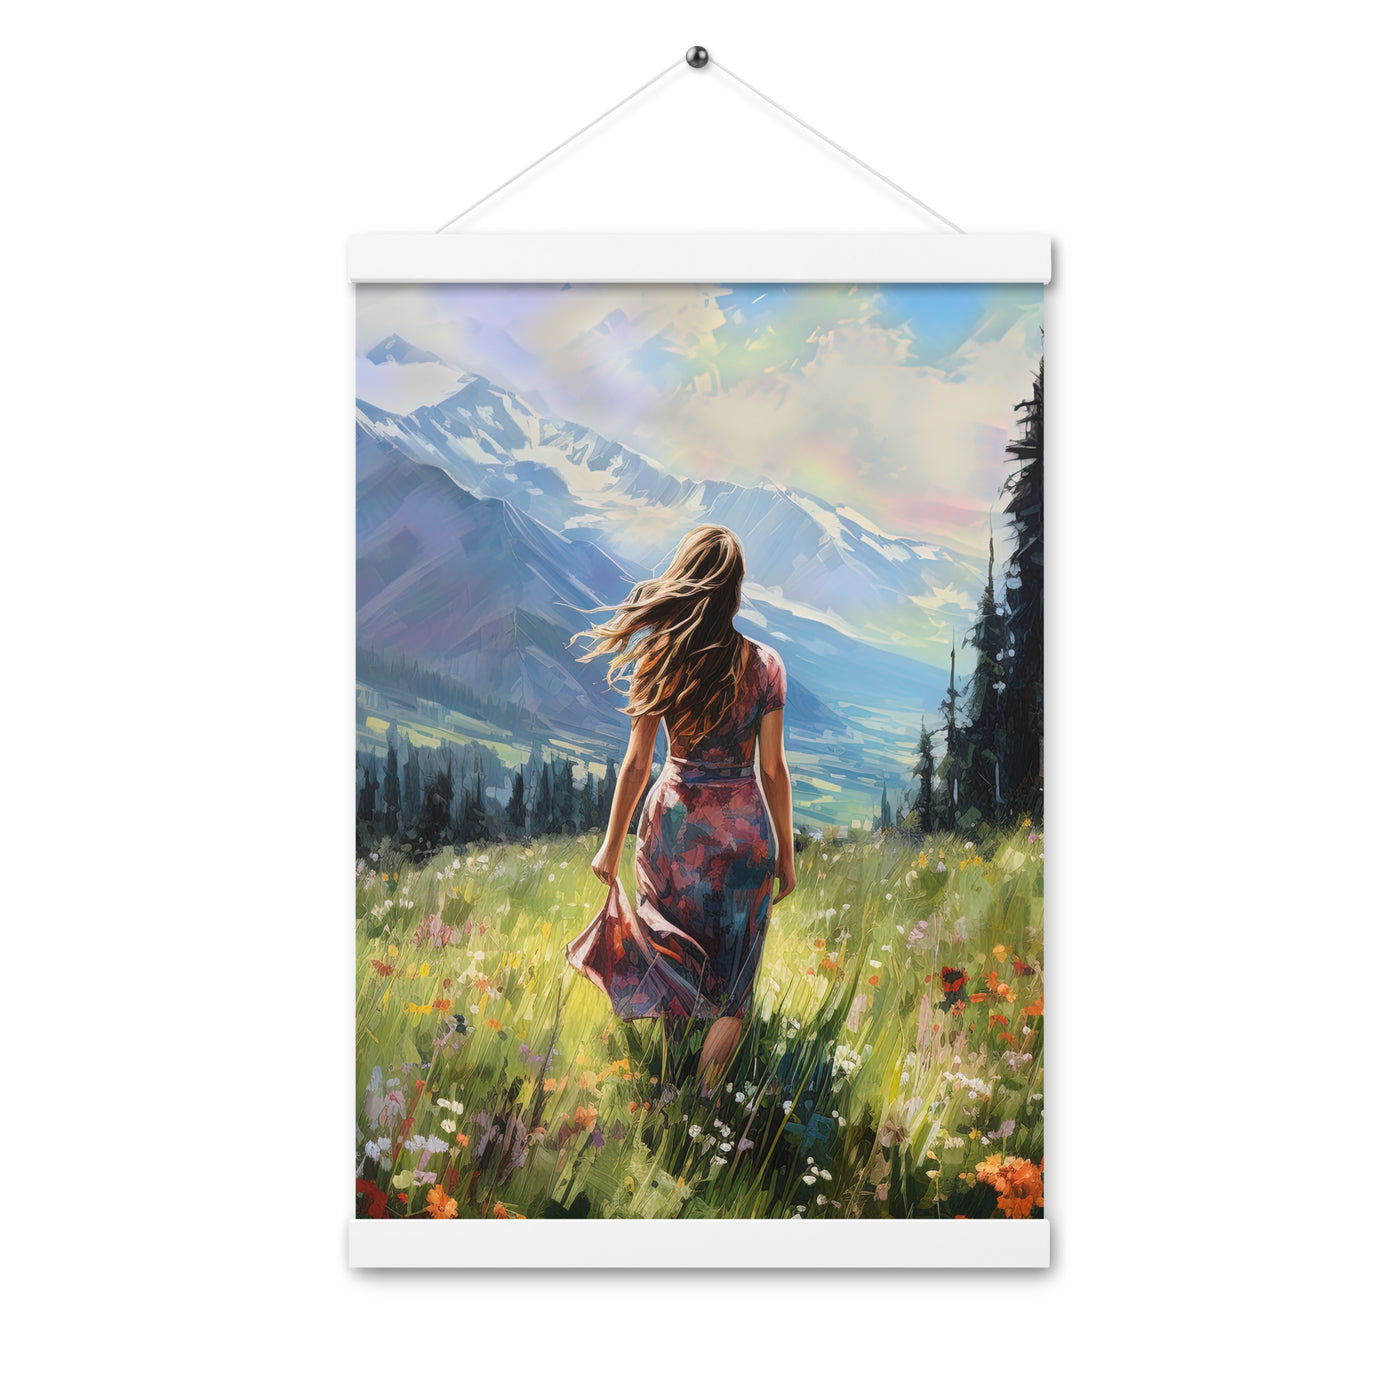 Frau mit langen Kleid im Feld mit Blumen - Berge im Hintergrund - Malerei - Premium Poster mit Aufhängung berge xxx 30.5 x 45.7 cm